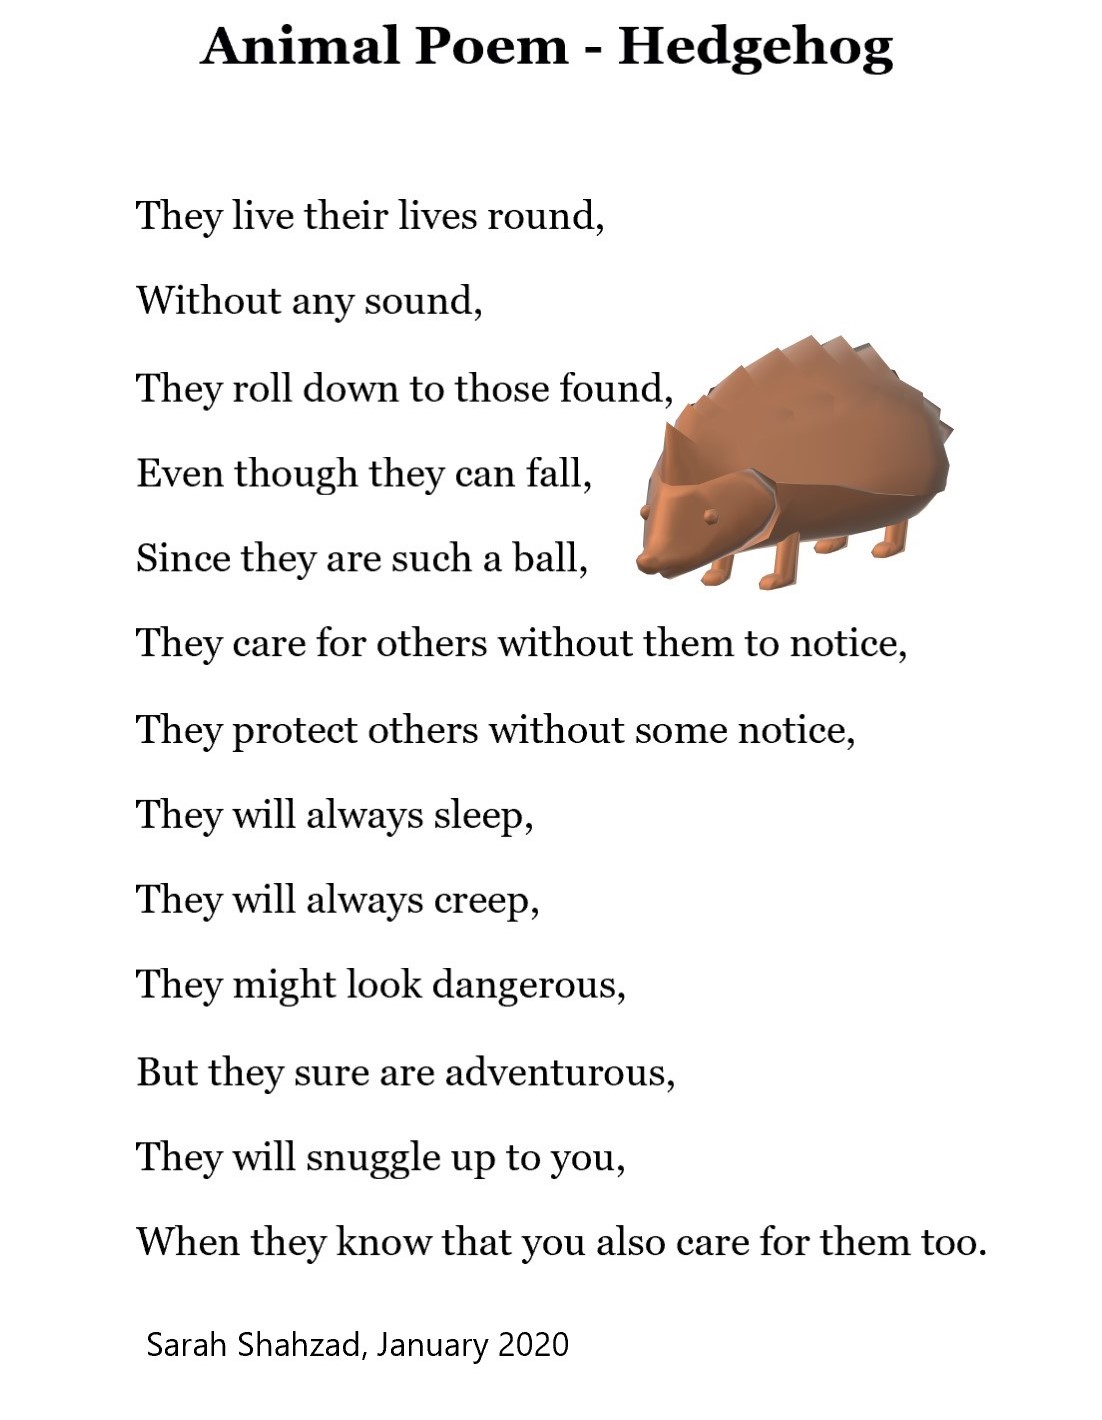 Hedgehog - Poem The Art - Expressing oneself is art